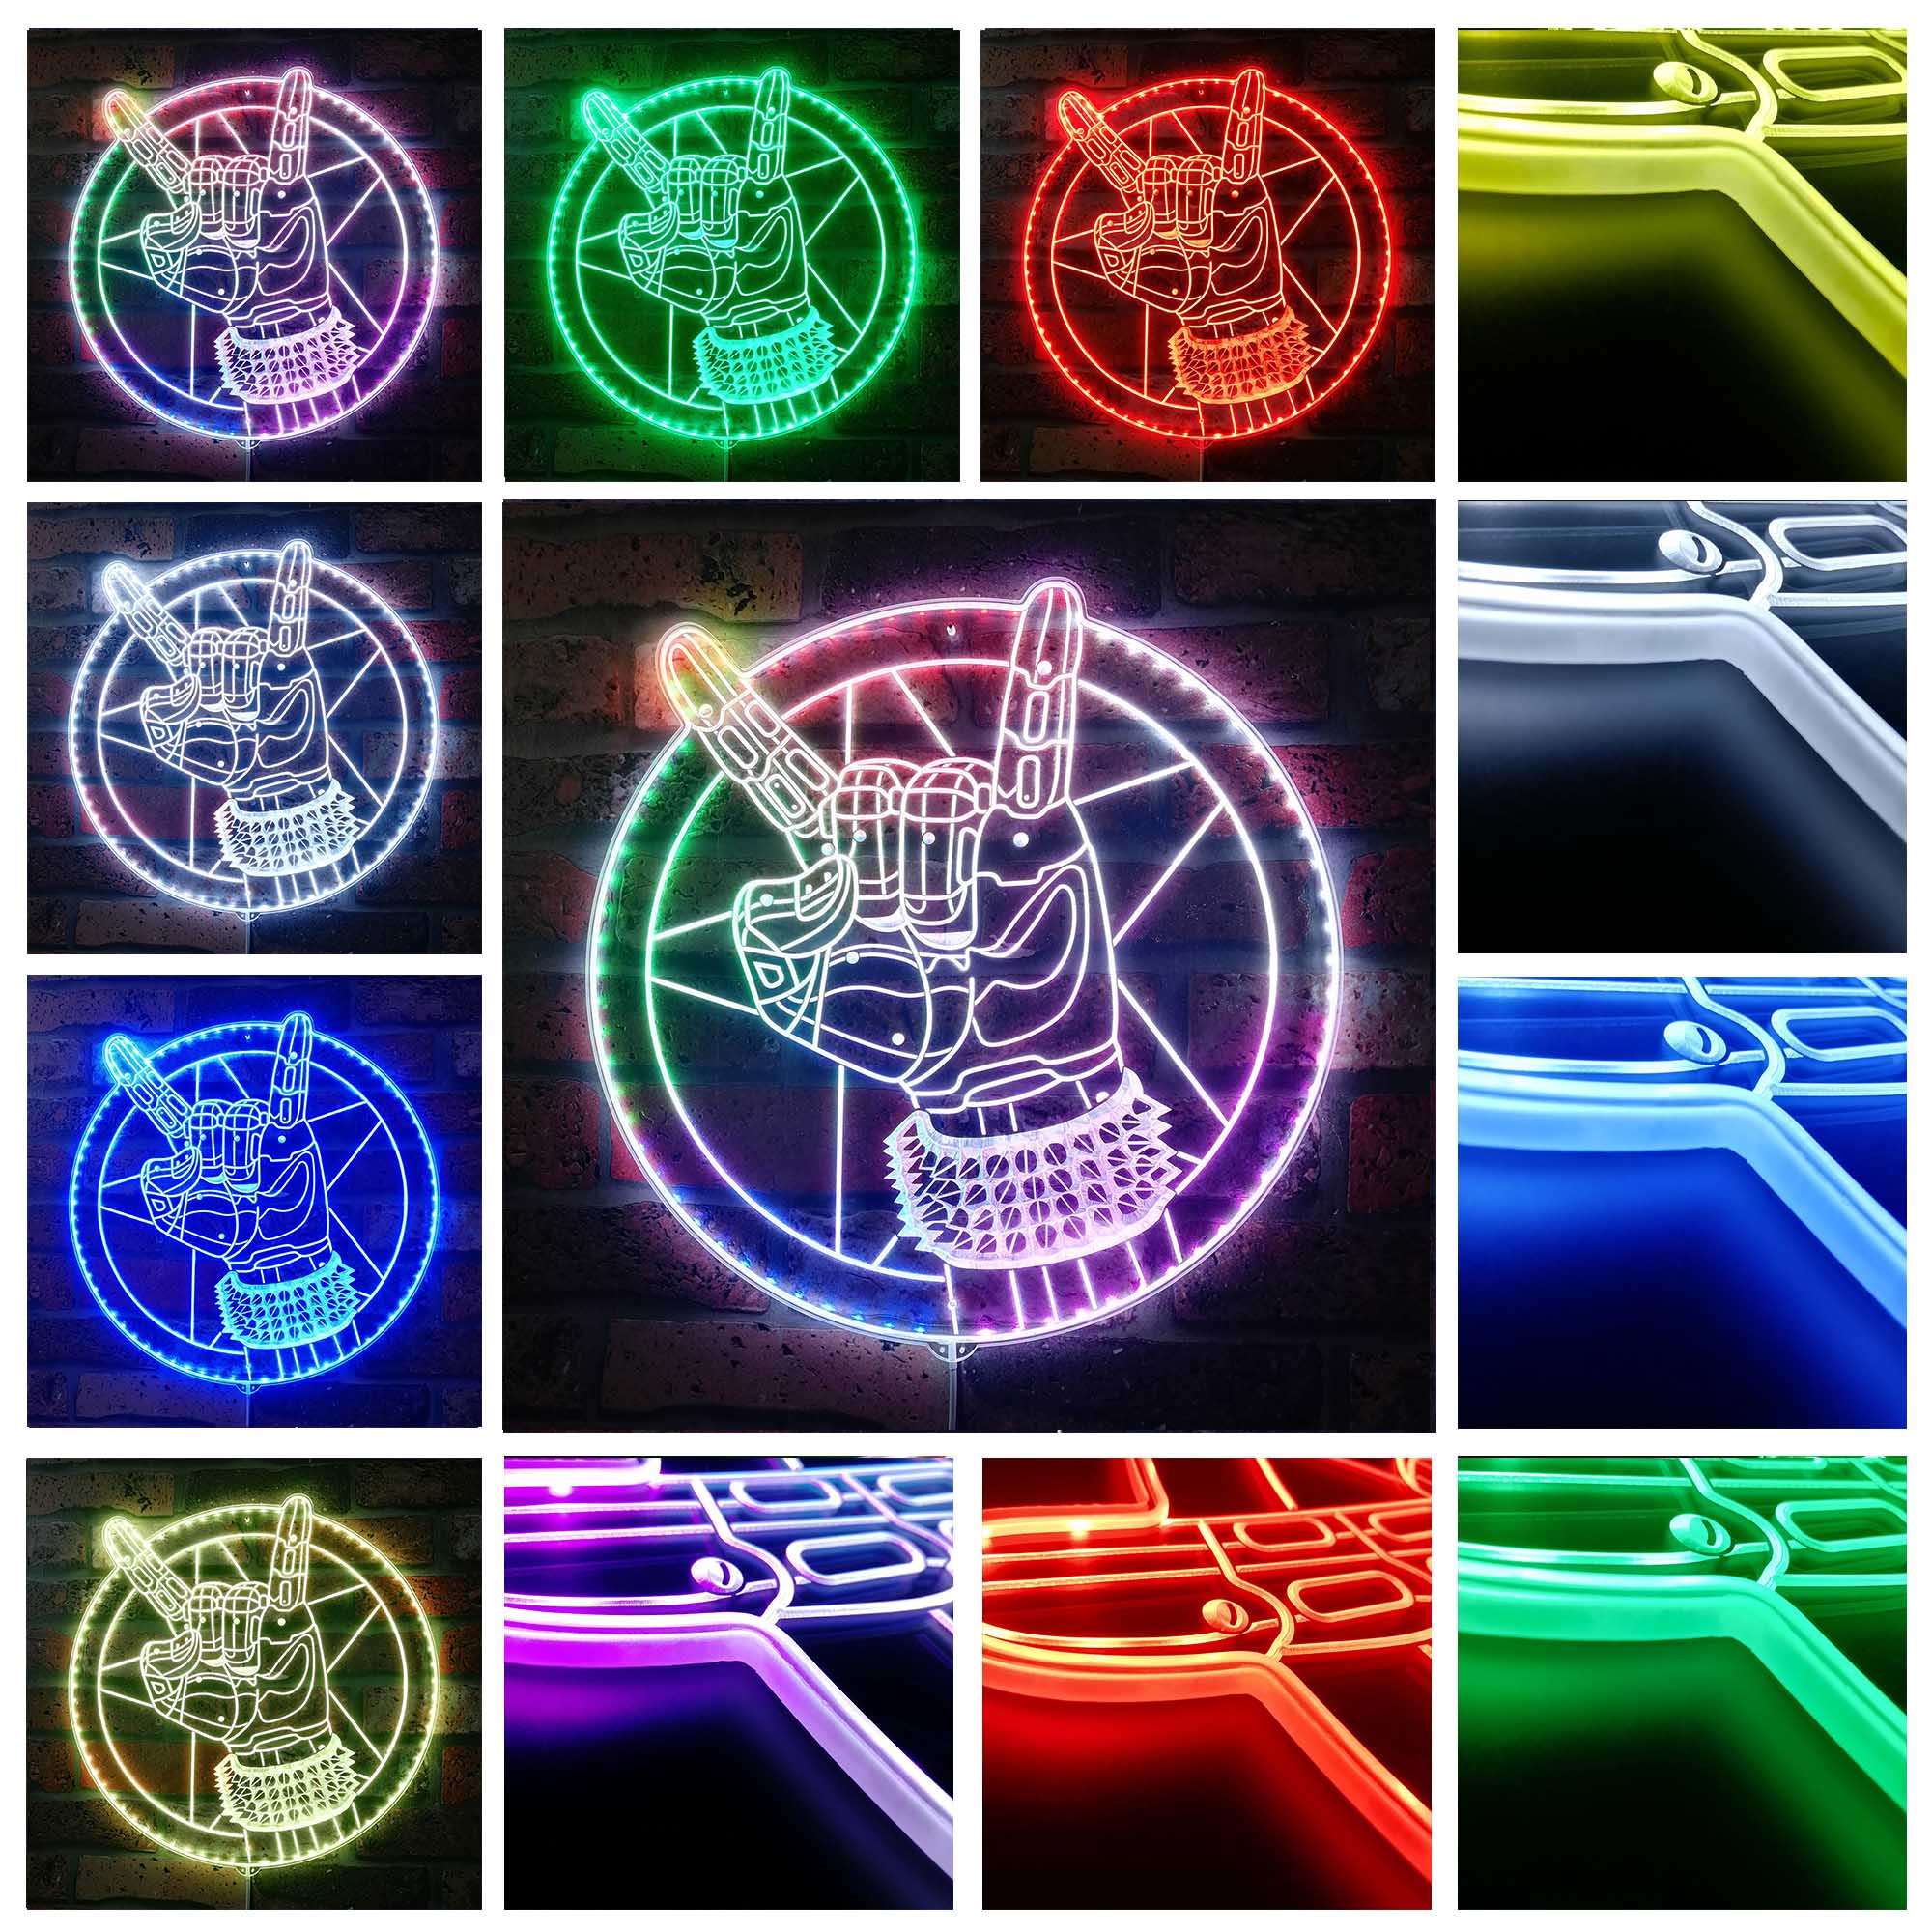 Cyberpunk 2077 Silverhand Dynamic RGB Edge Lit LED Sign